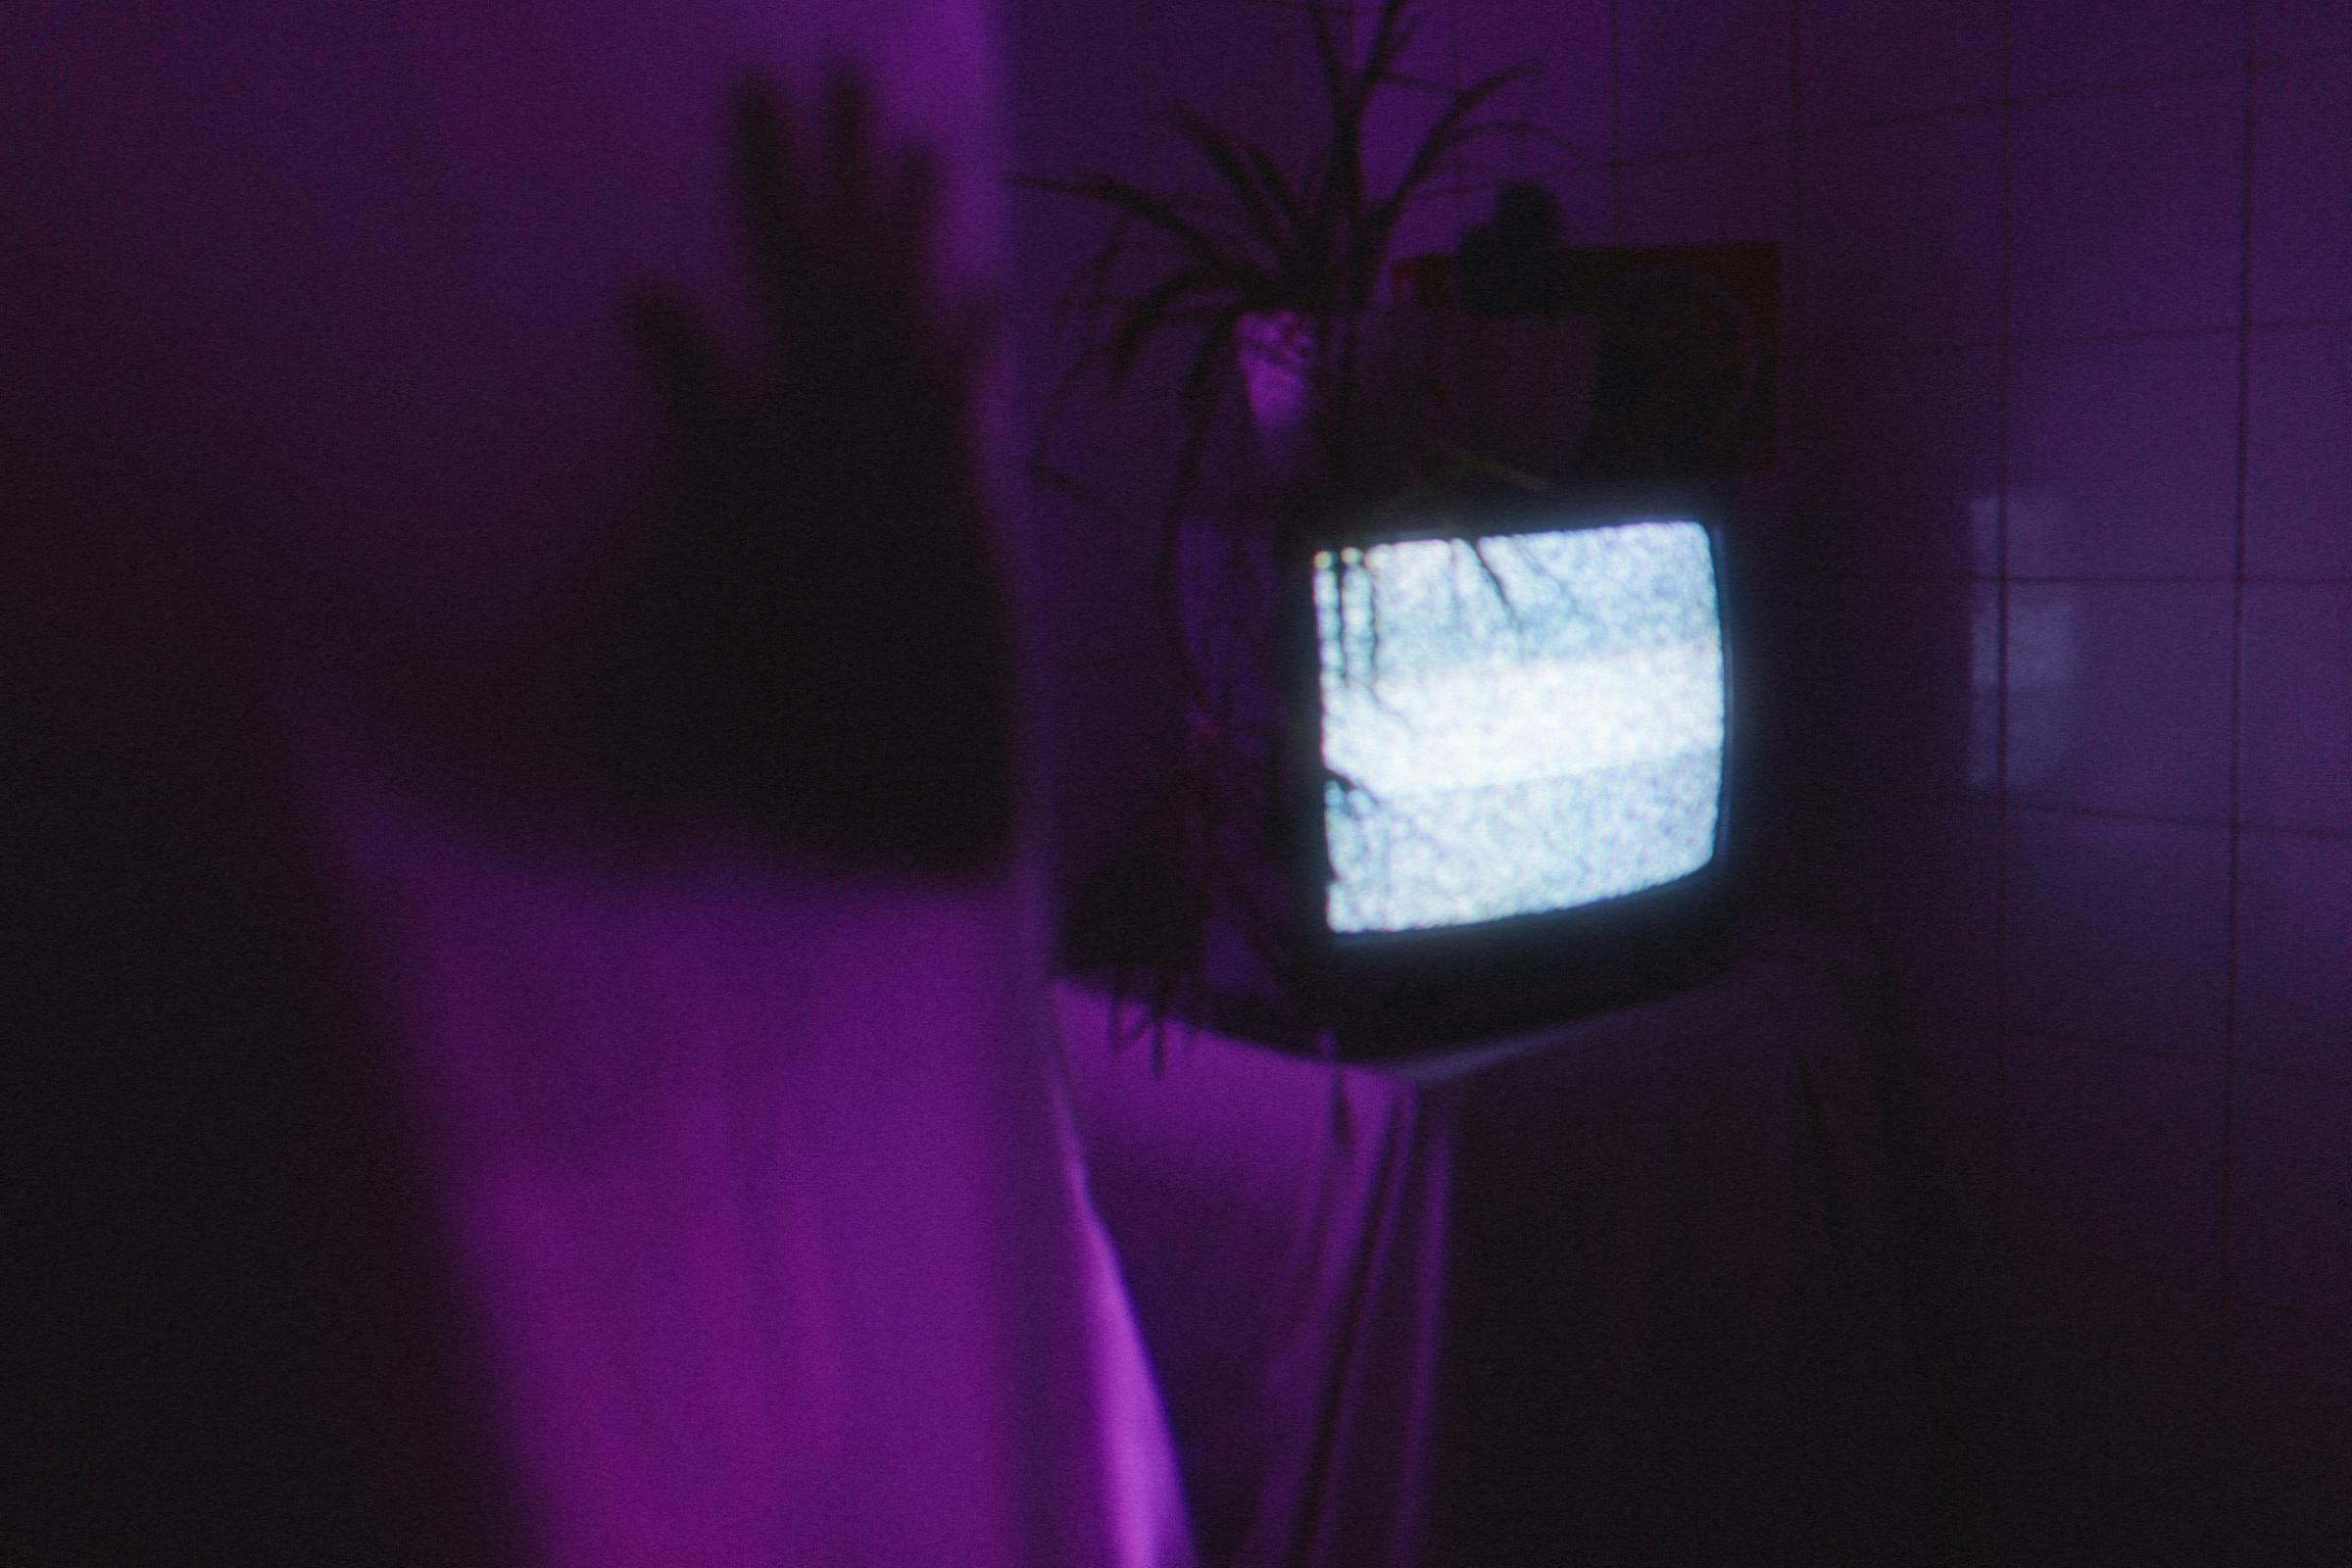 Телевизор в спальне не только считается зеркалом, но и мешает человеку восстанавливать силы. Фото © Unsplash